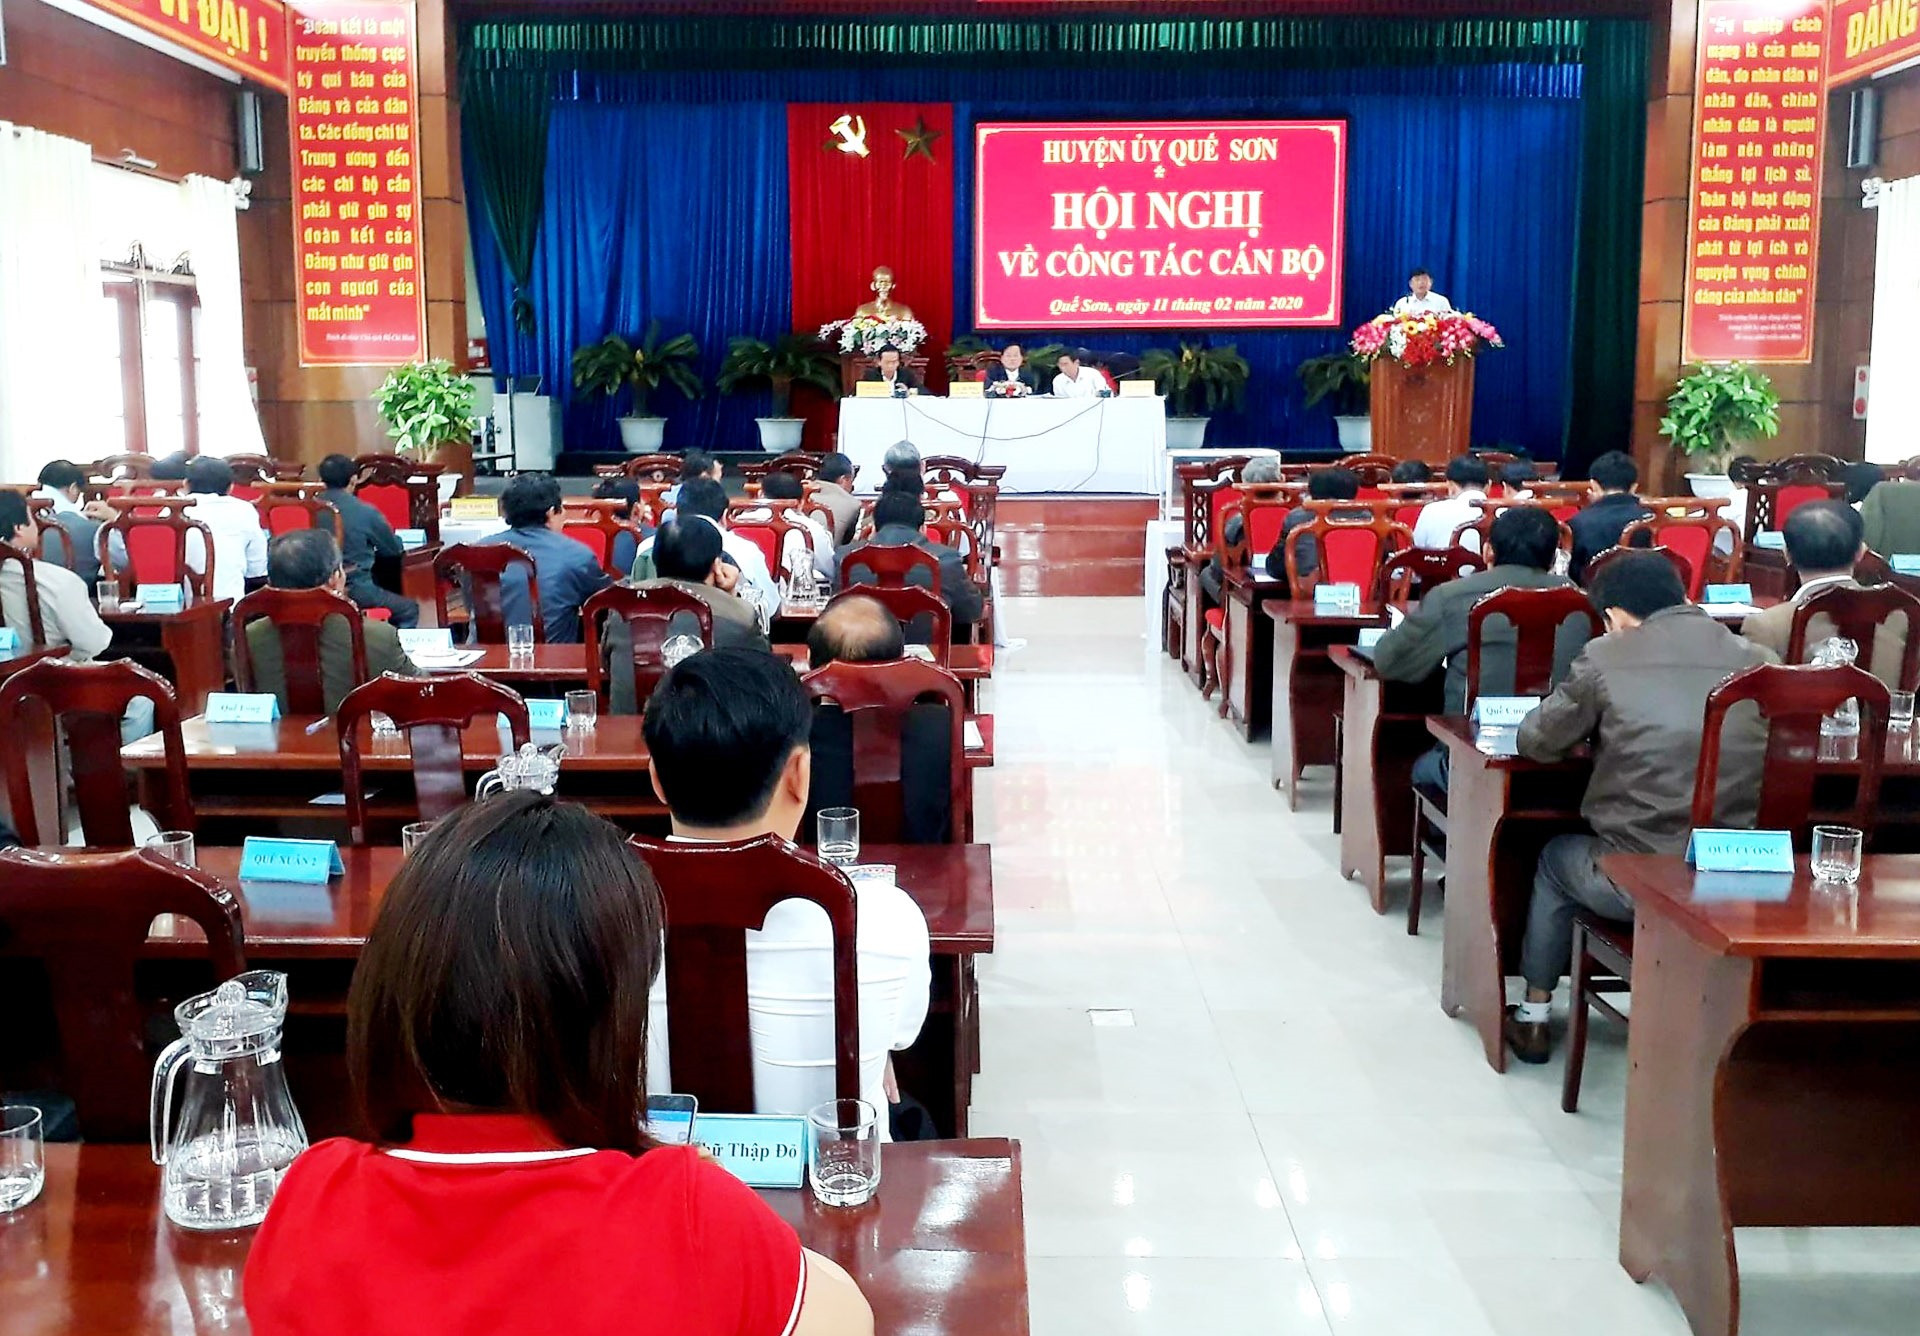 Huyện ủy Quế Sơn tổ chức hội nghị về công tác cán bộ chuẩn bị Đại hội Đại biểu Đảng bộ huyện nhiệm kỳ 2020 - 2025. Ảnh: L.T